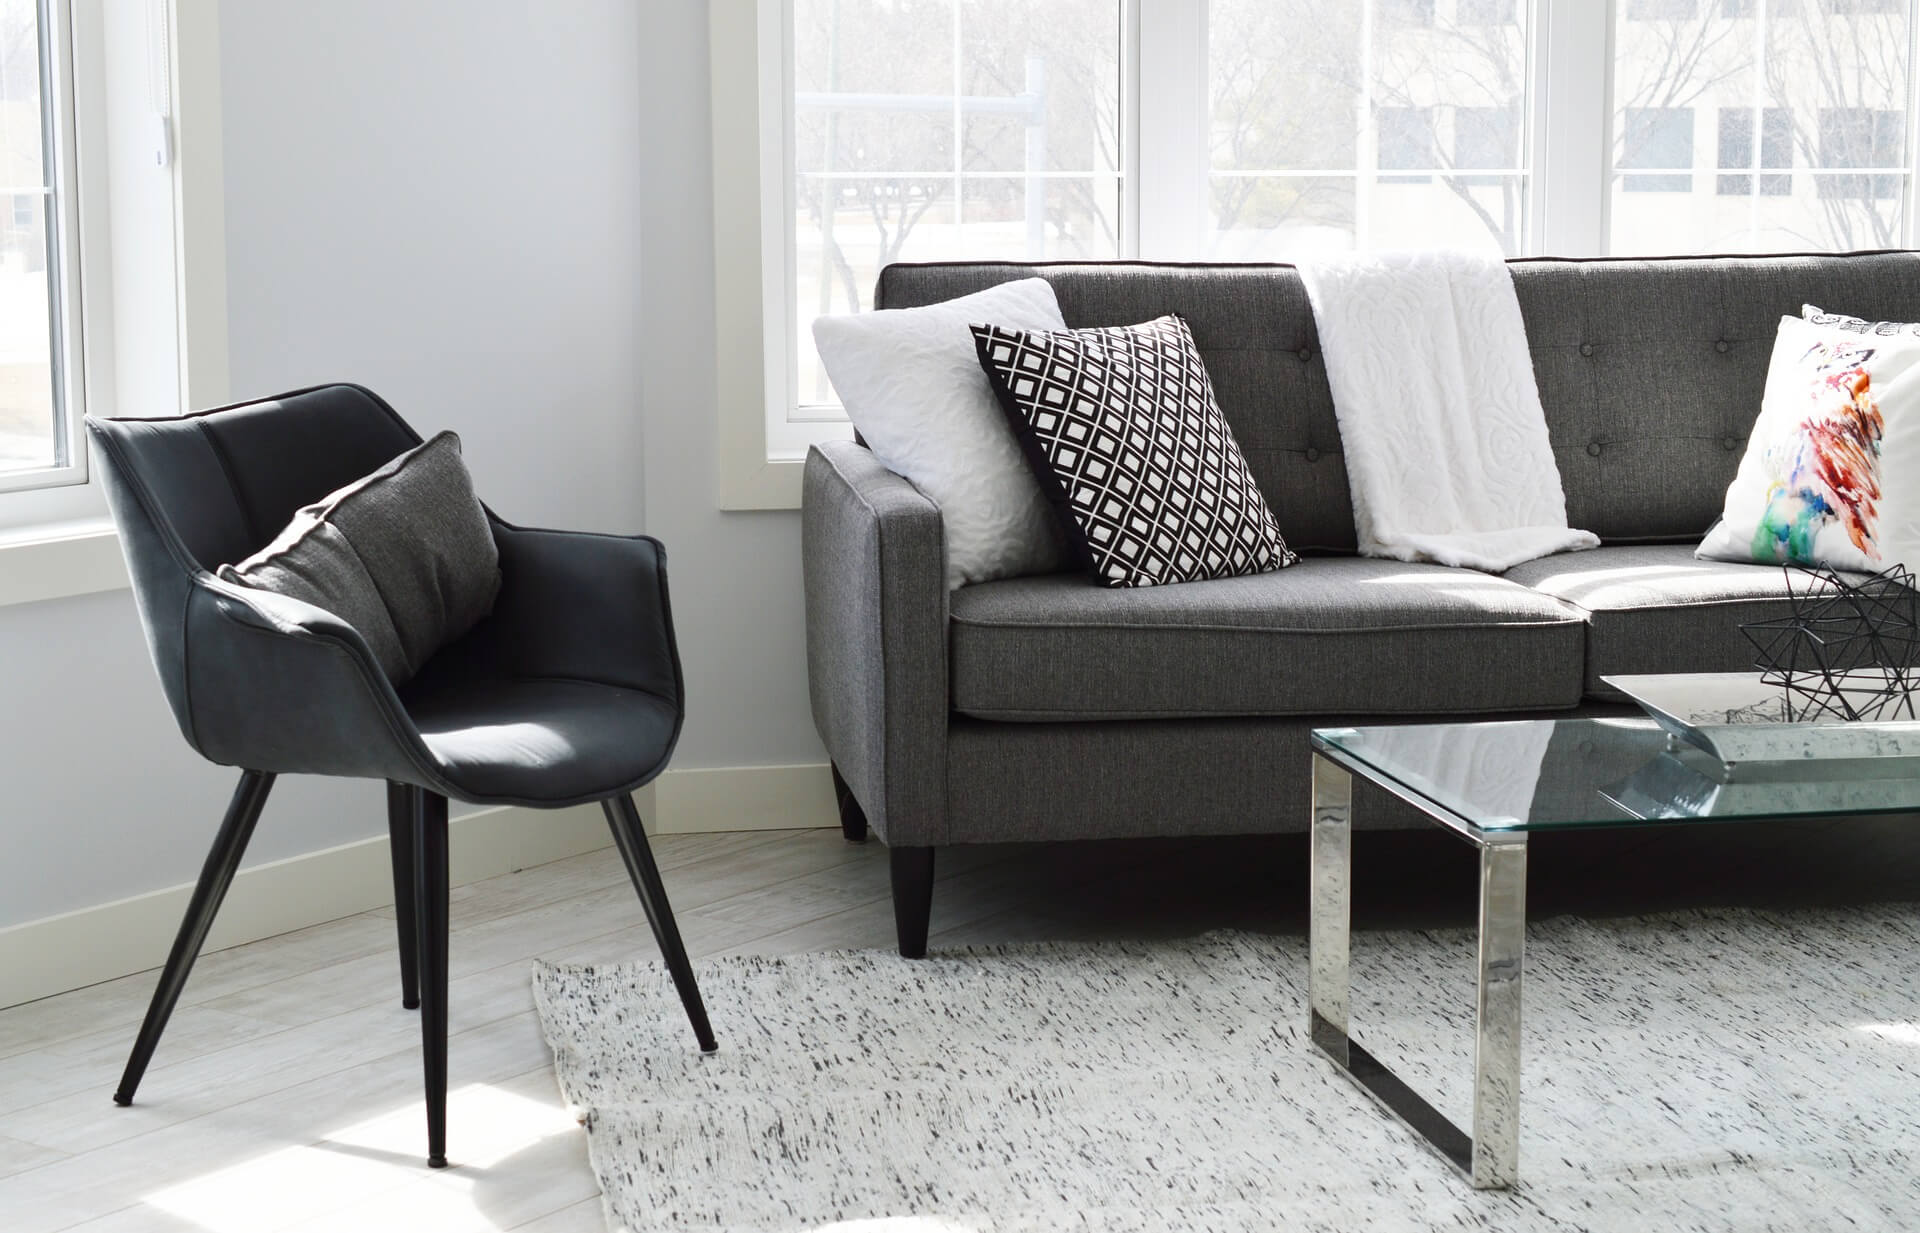 Met deze drie tips kies jij de beste meubels voor je huis